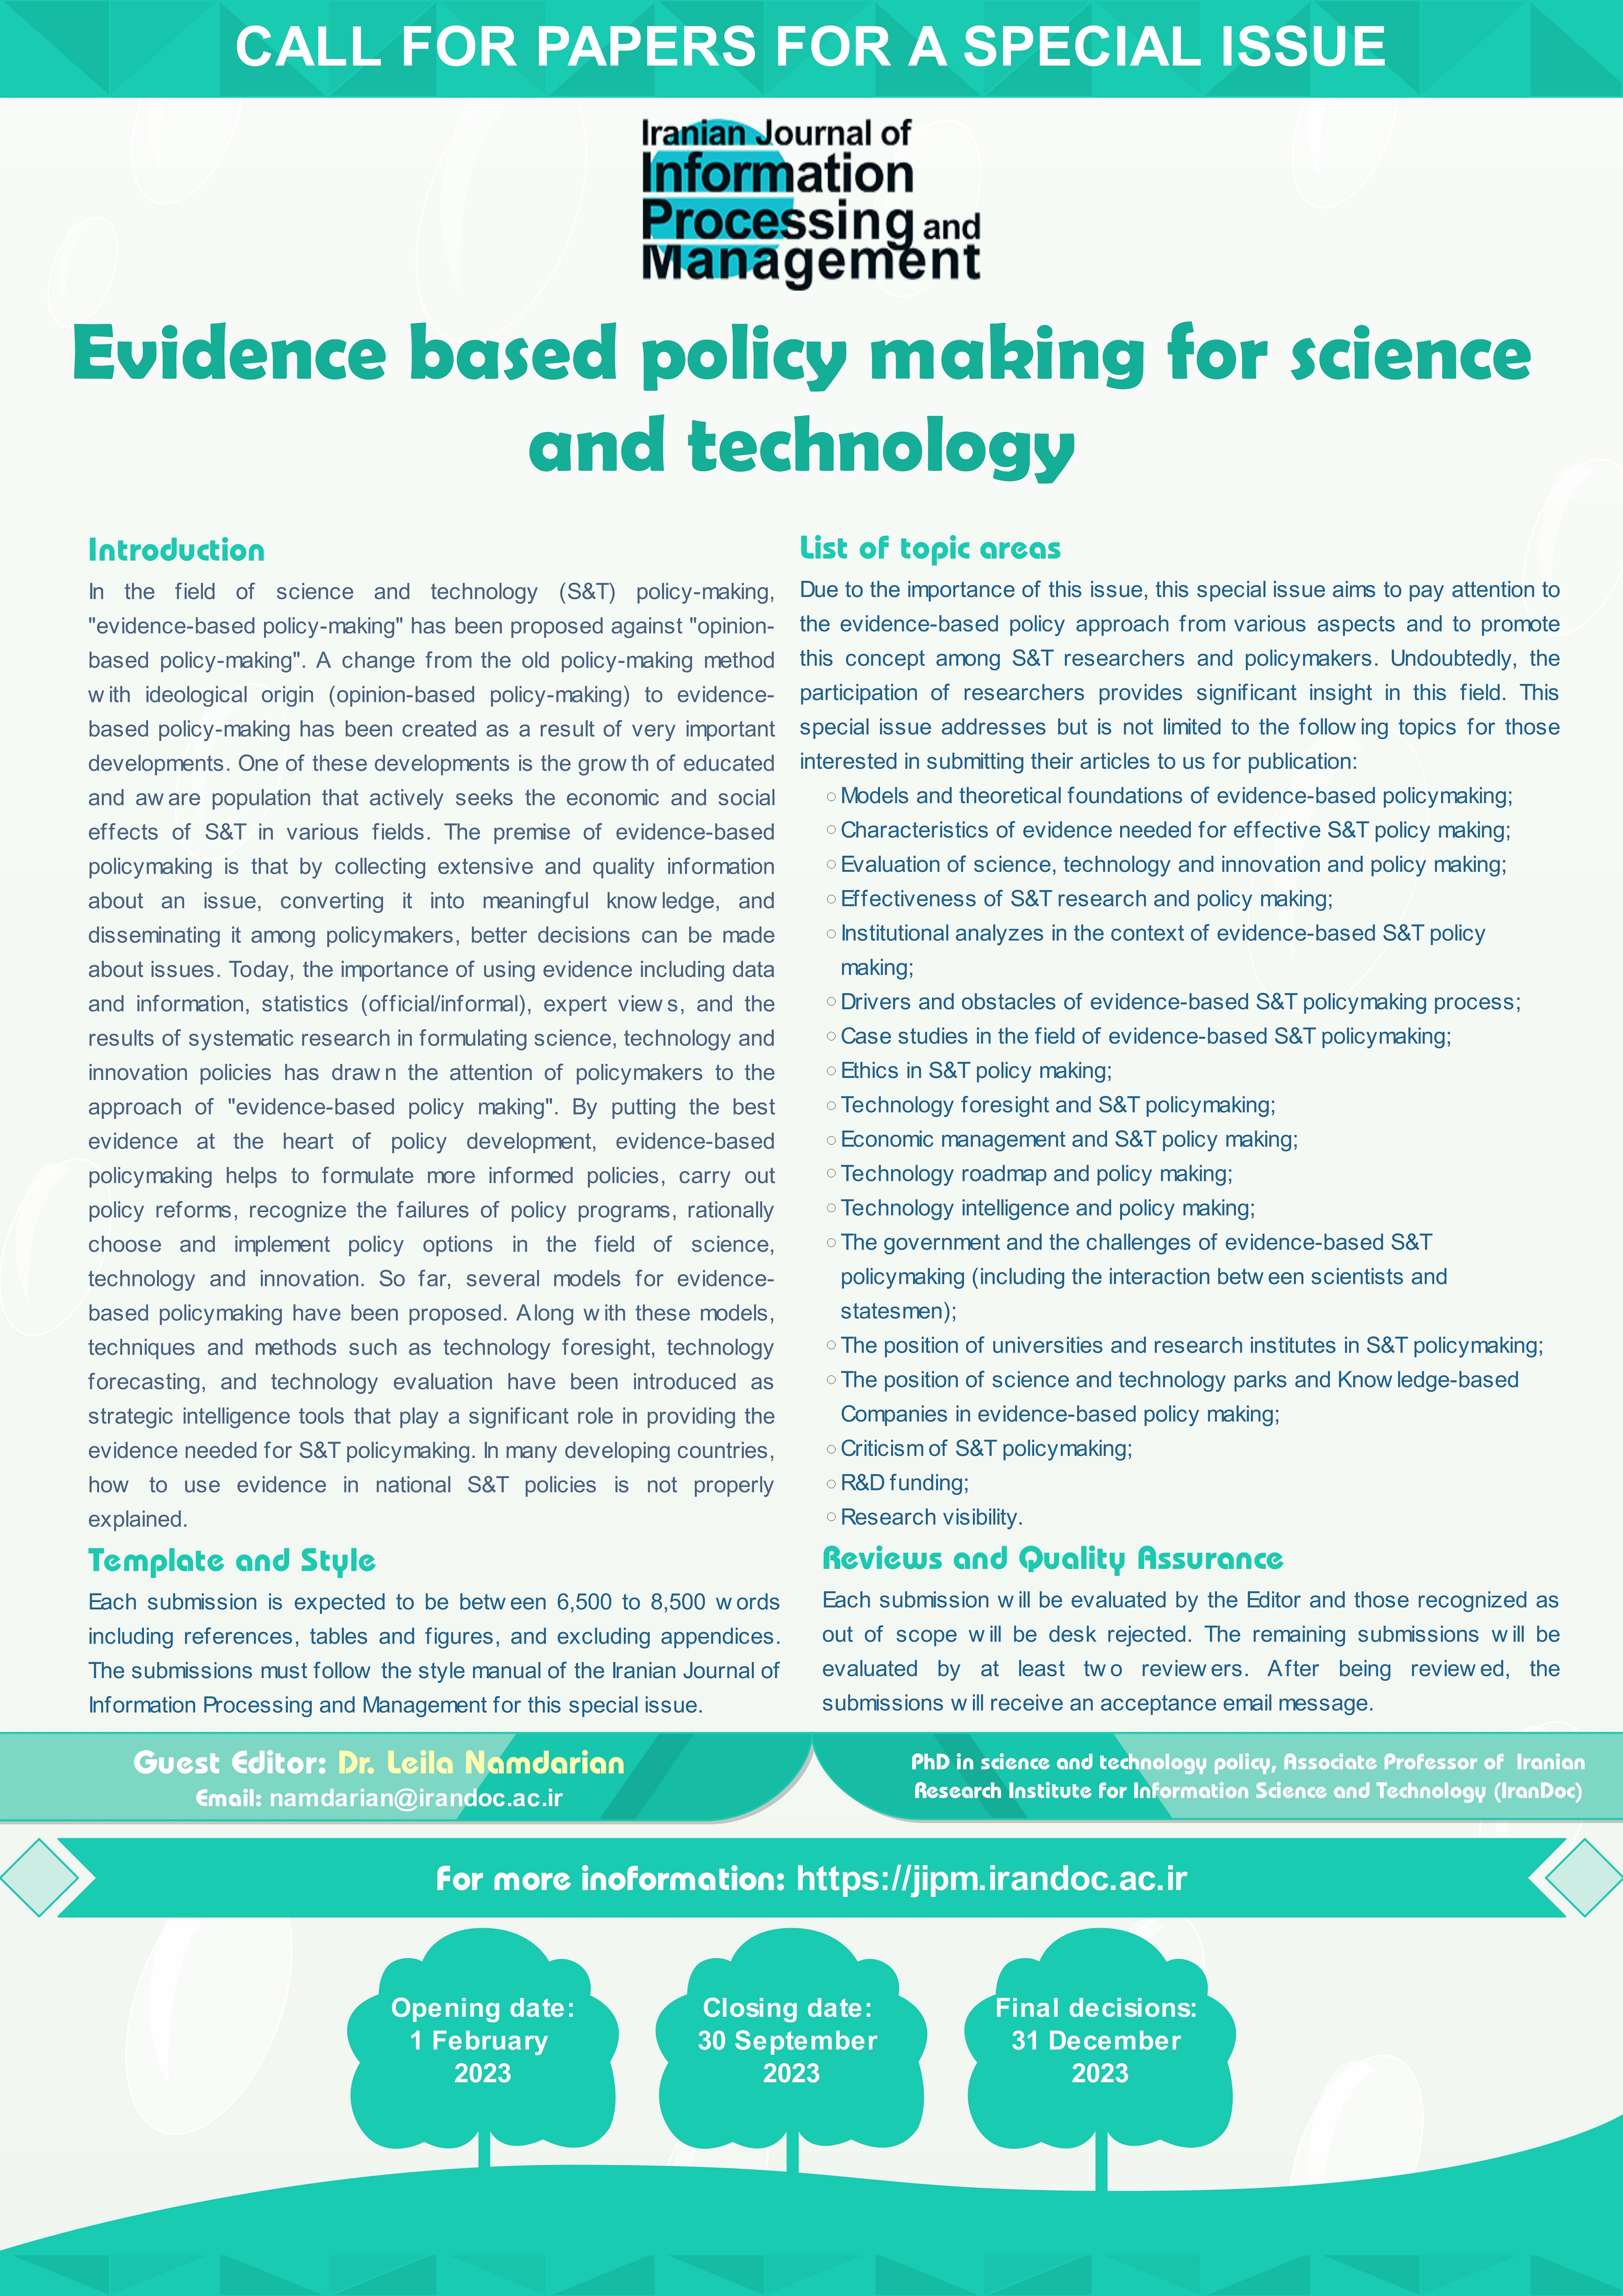 فراخوان مقاله برای ویژه نامه در حوزه های موضوعی مرتبط با  " سیاستگذاری مبتنی بر شواهد در حوزه علم و فناوری "